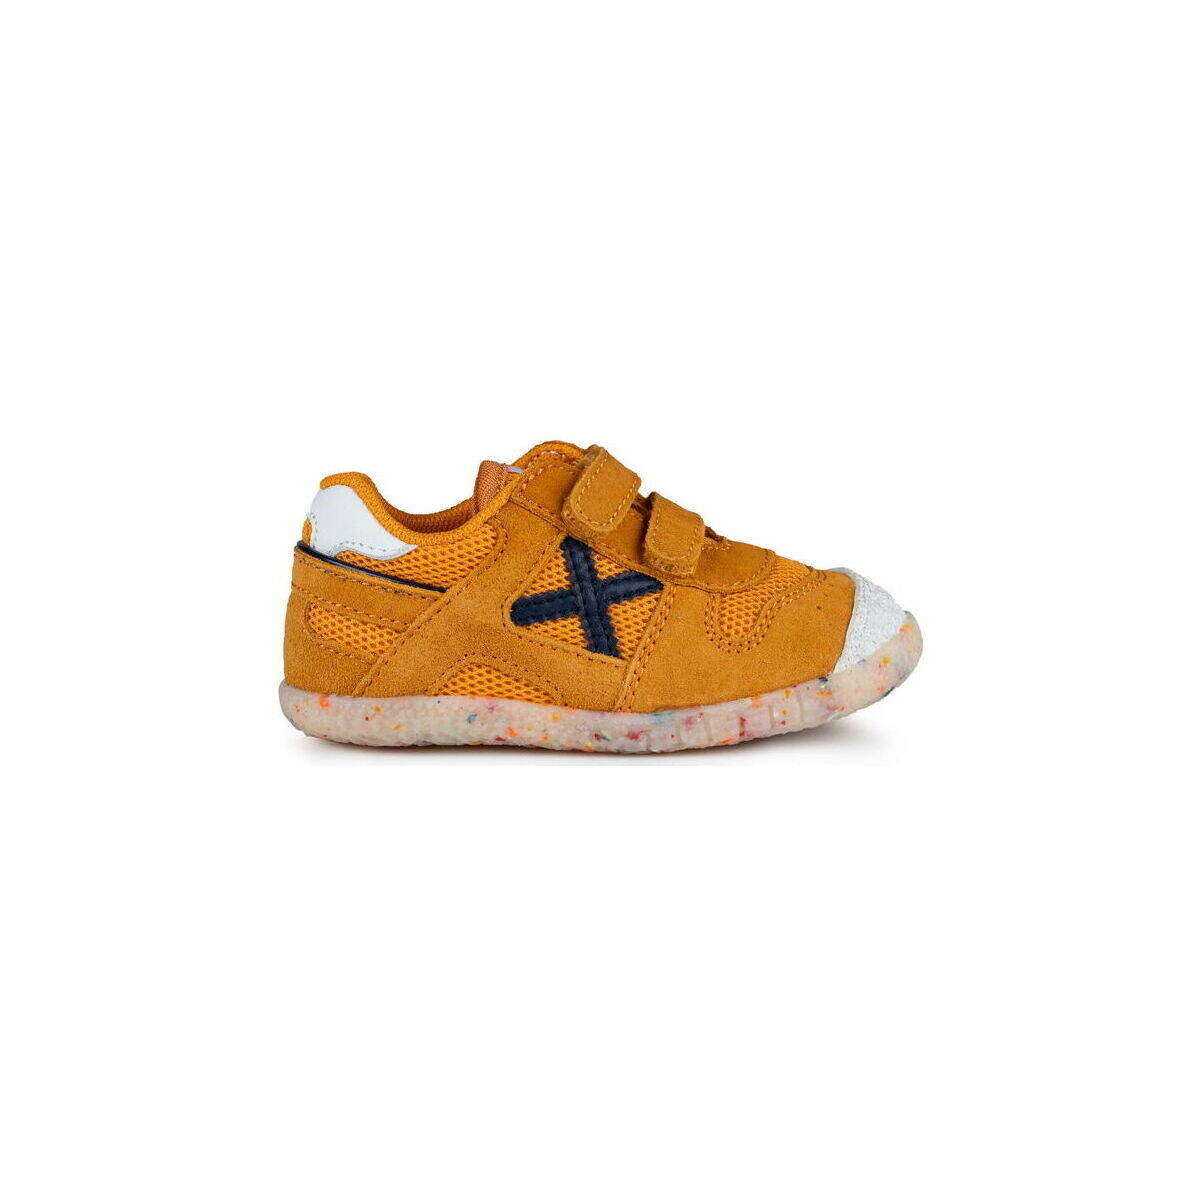 Schoenen Kinderen Sneakers Munich Baby goal 8172587 Naranja Oranje